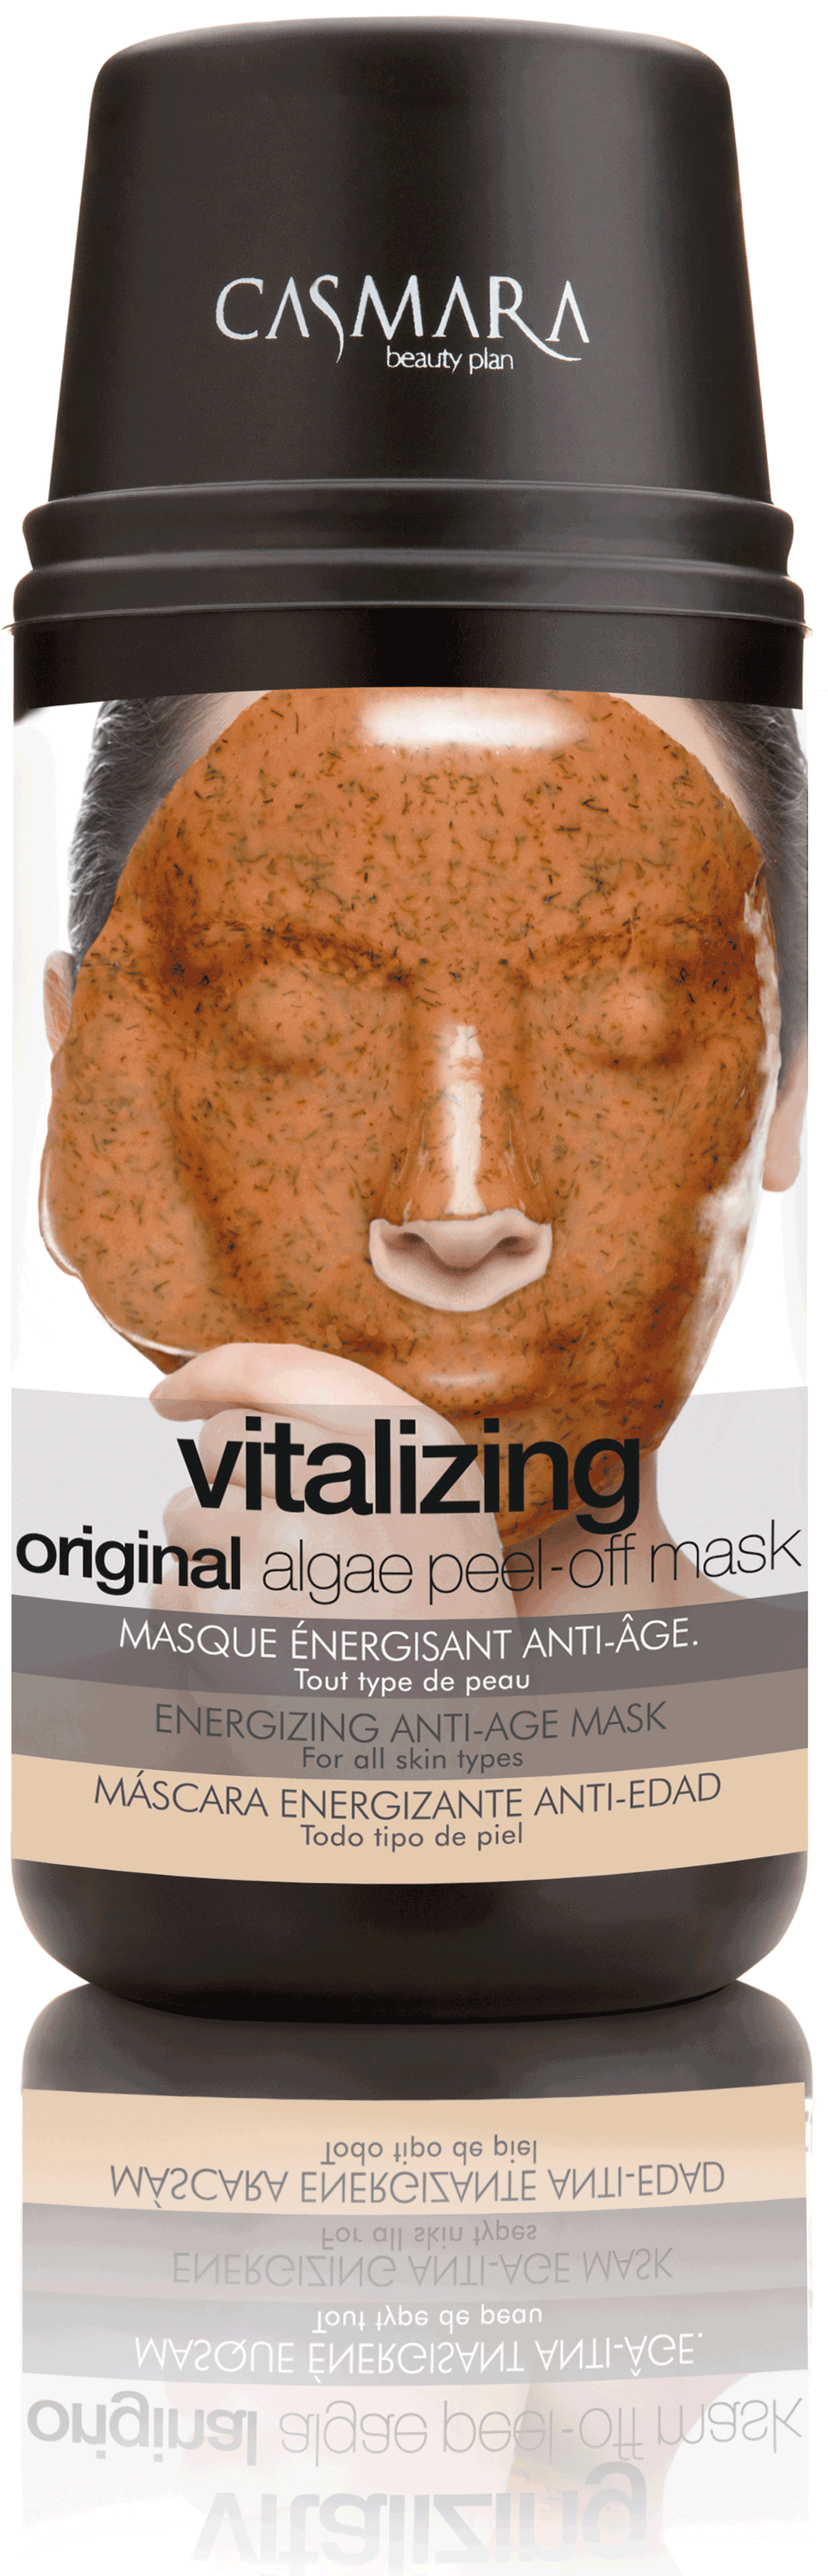 Vitalizing Mask Kit